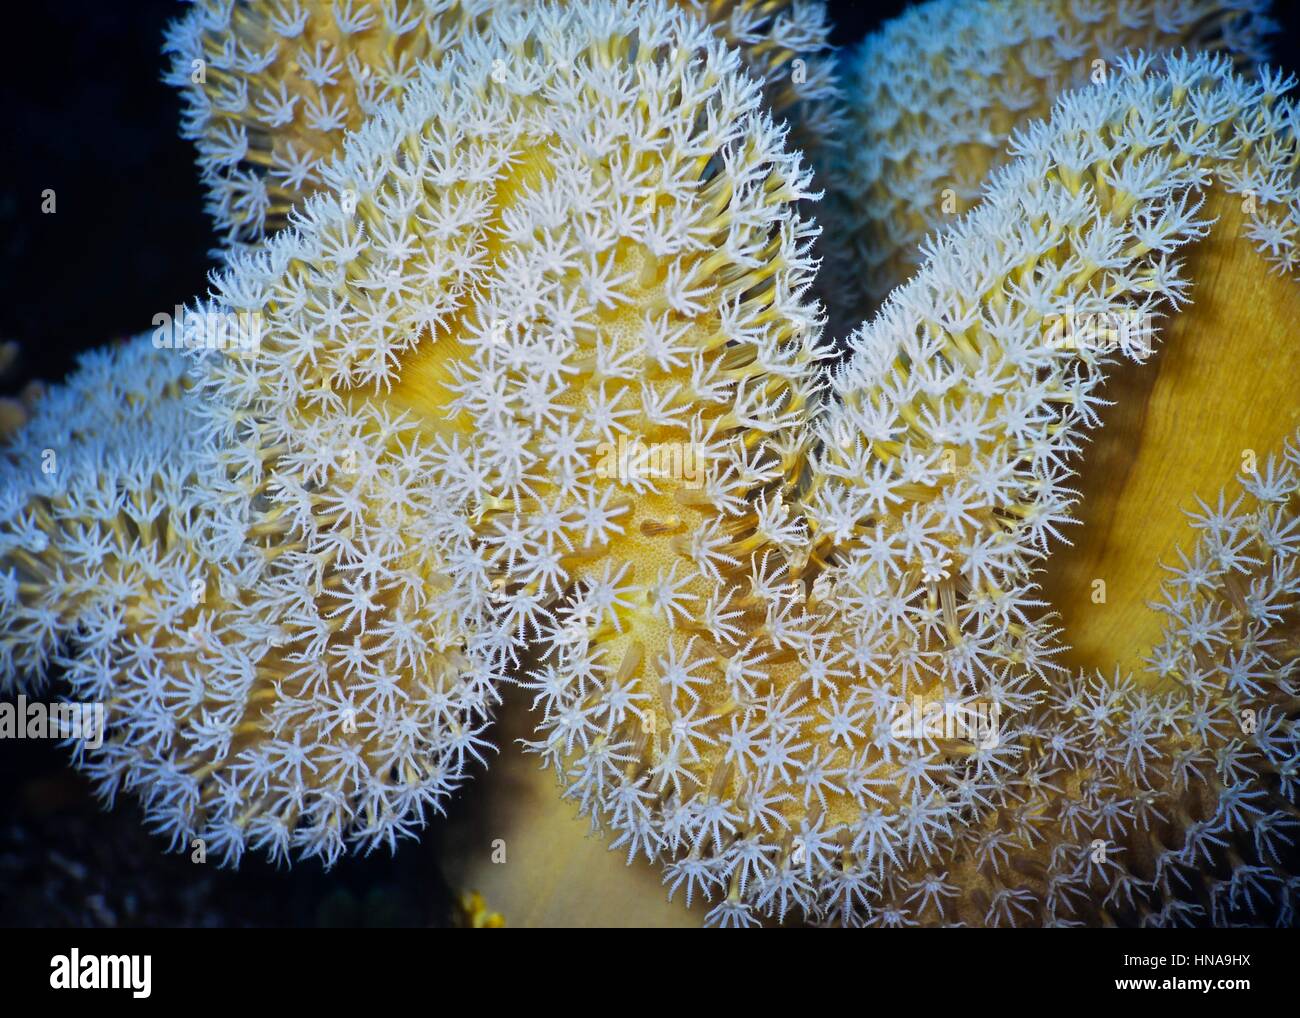 Eine Leder-Koralle (Sarcophyton Elegans) mit seinen vielen acht Tentakel Polypen erweitert und in der aktuellen Fütterung. Fotografiert im ägyptischen Roten Meer. Stockfoto